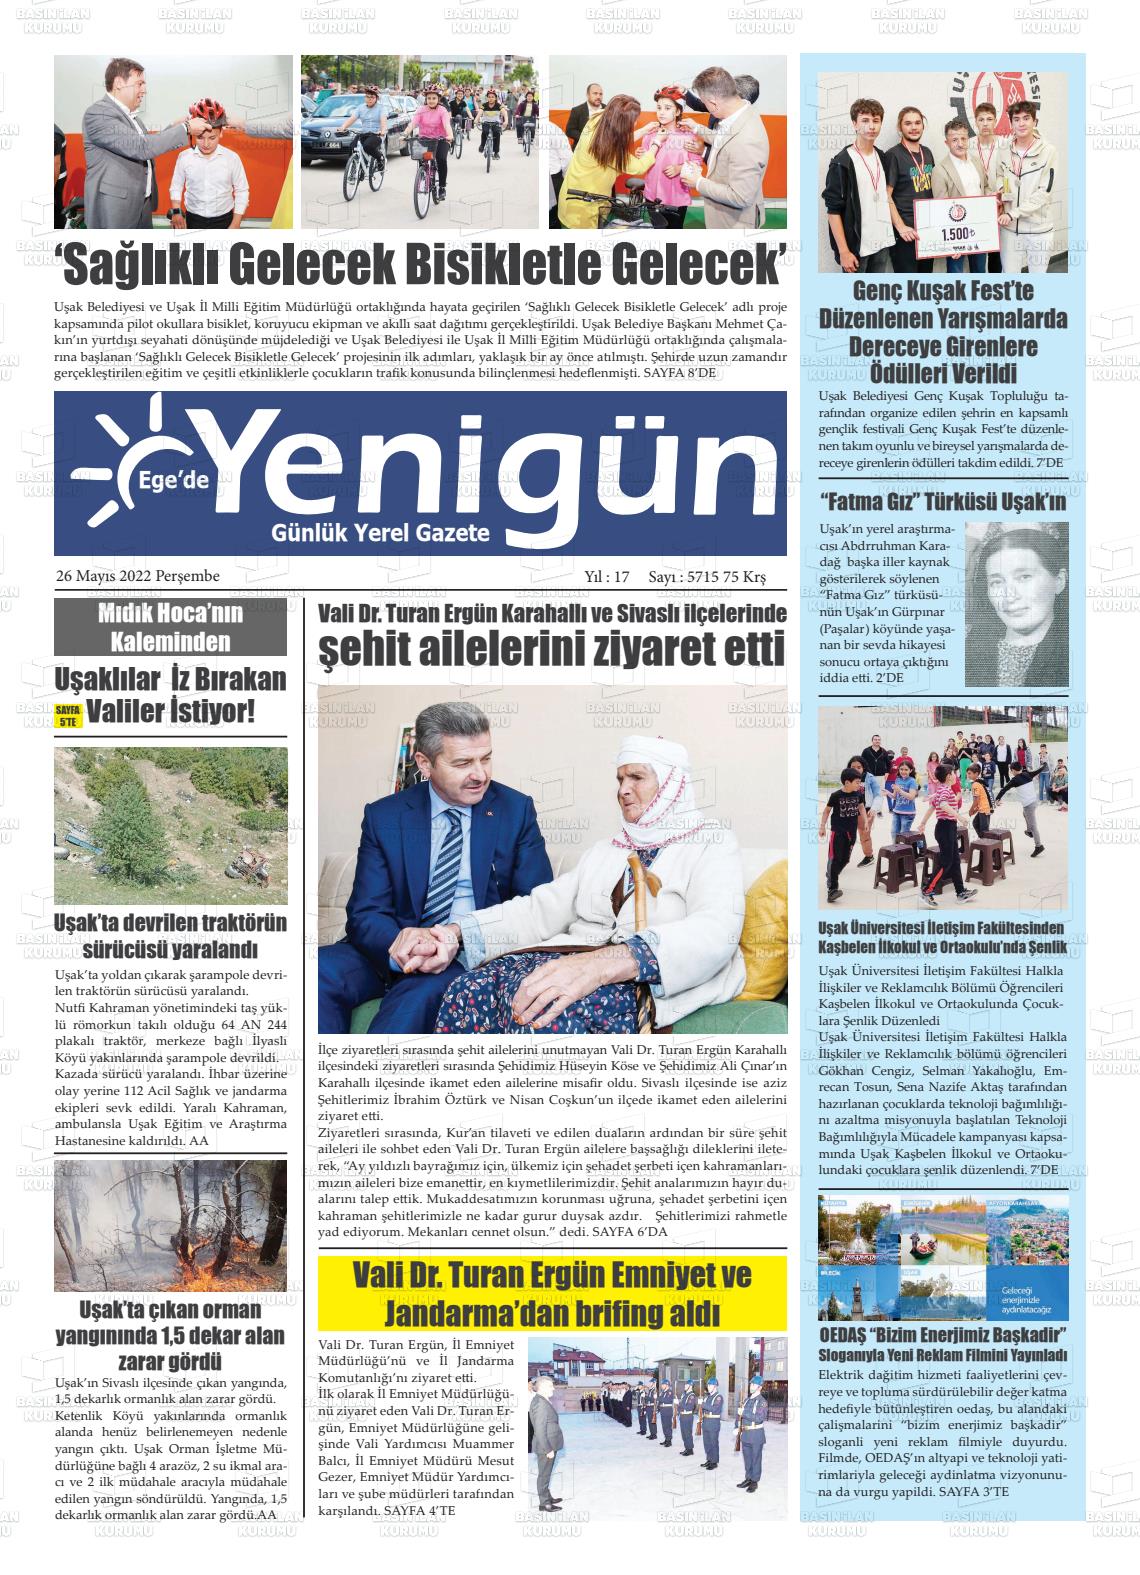 26 Mayıs 2022 EGE'DE YENİGÜN GAZETESİ Gazete Manşeti